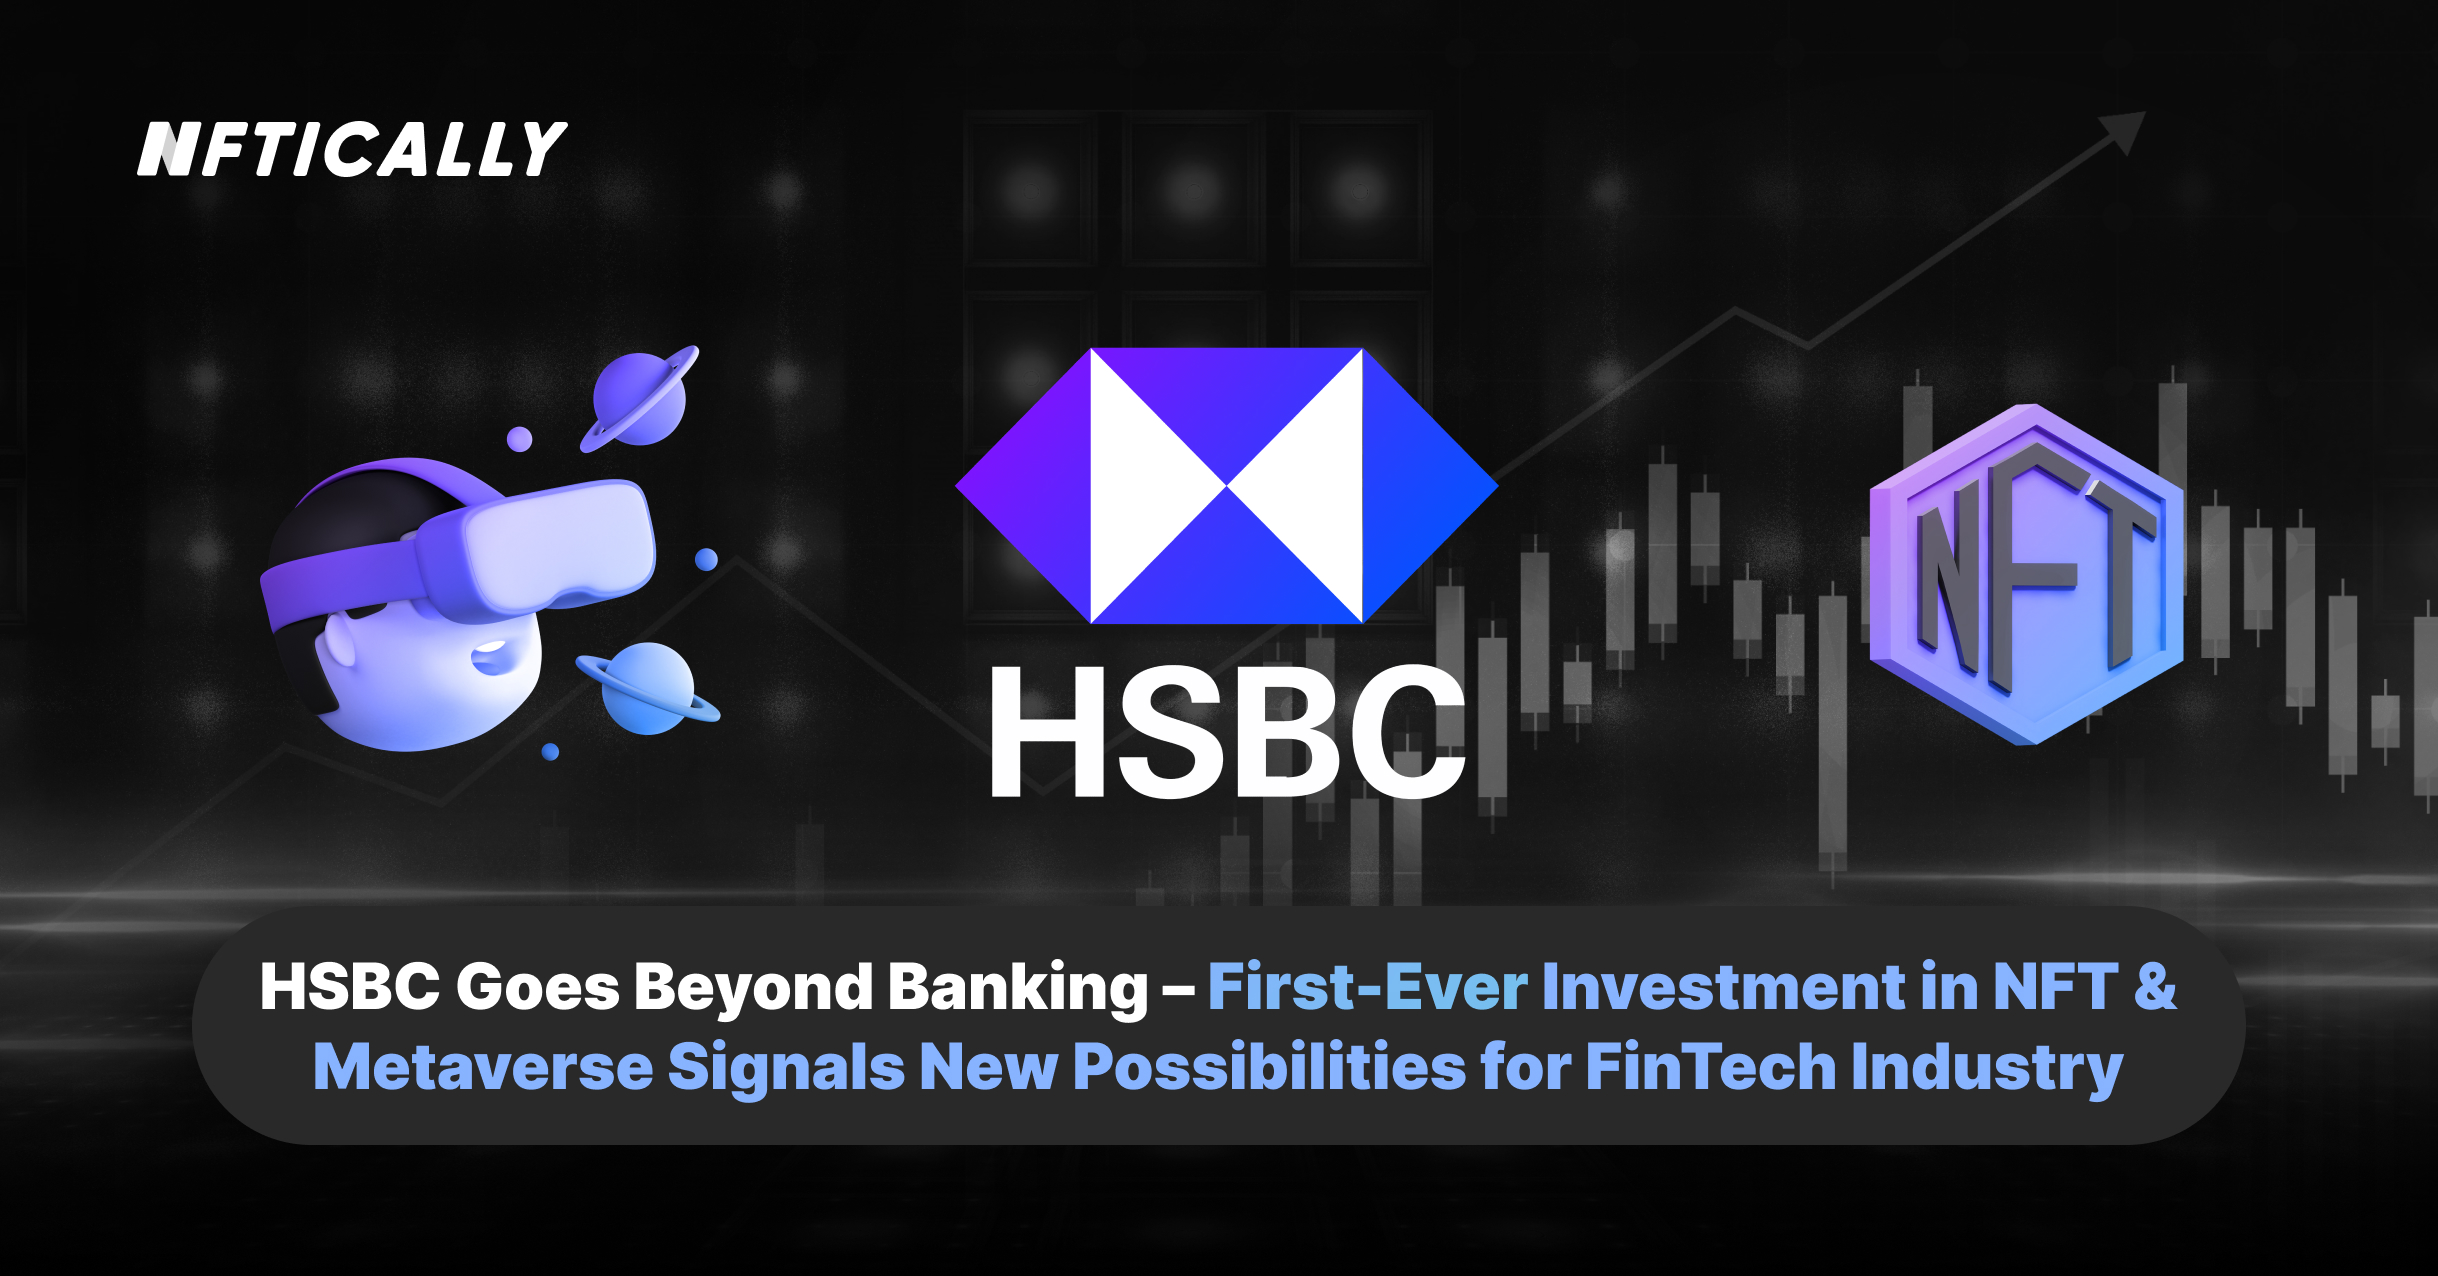 HSBC va au-delà du secteur bancaire : le tout premier investissement dans les NFT et le Metaverse ouvre de nouvelles possibilités pour le secteur FinTech